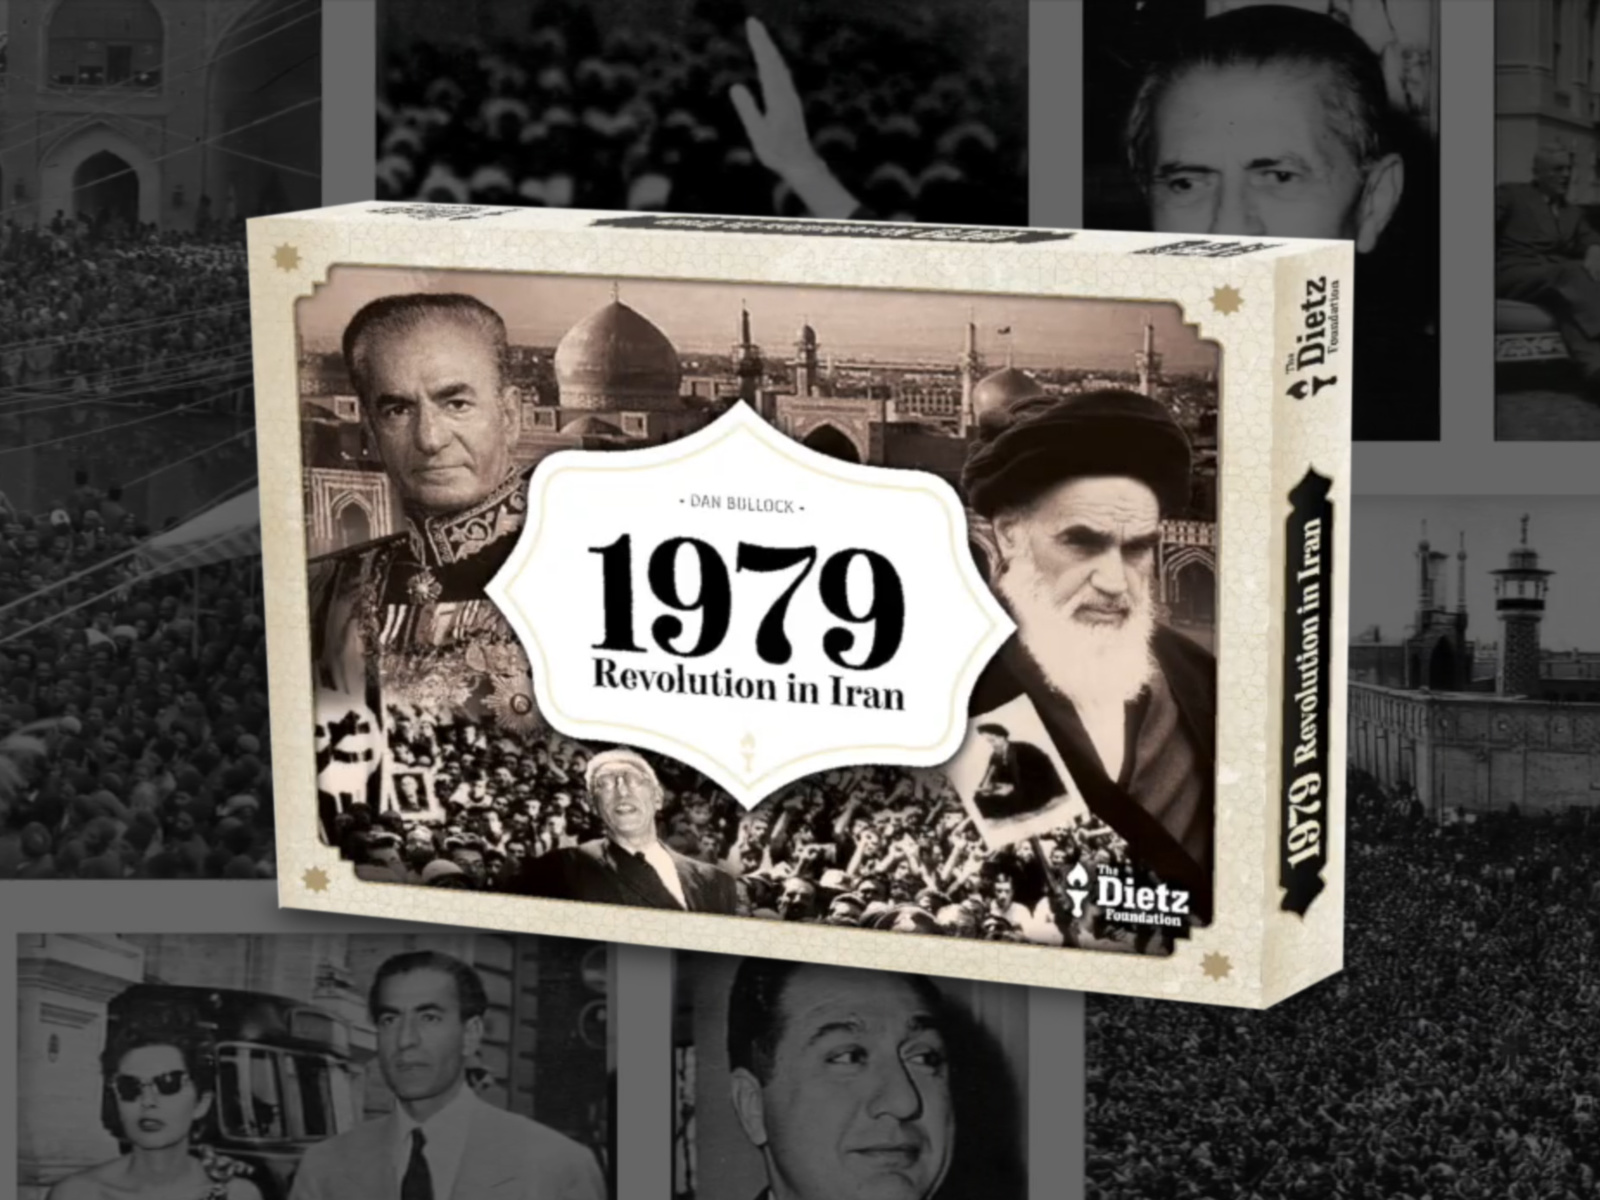 1979: Revolution in Iran, the board game